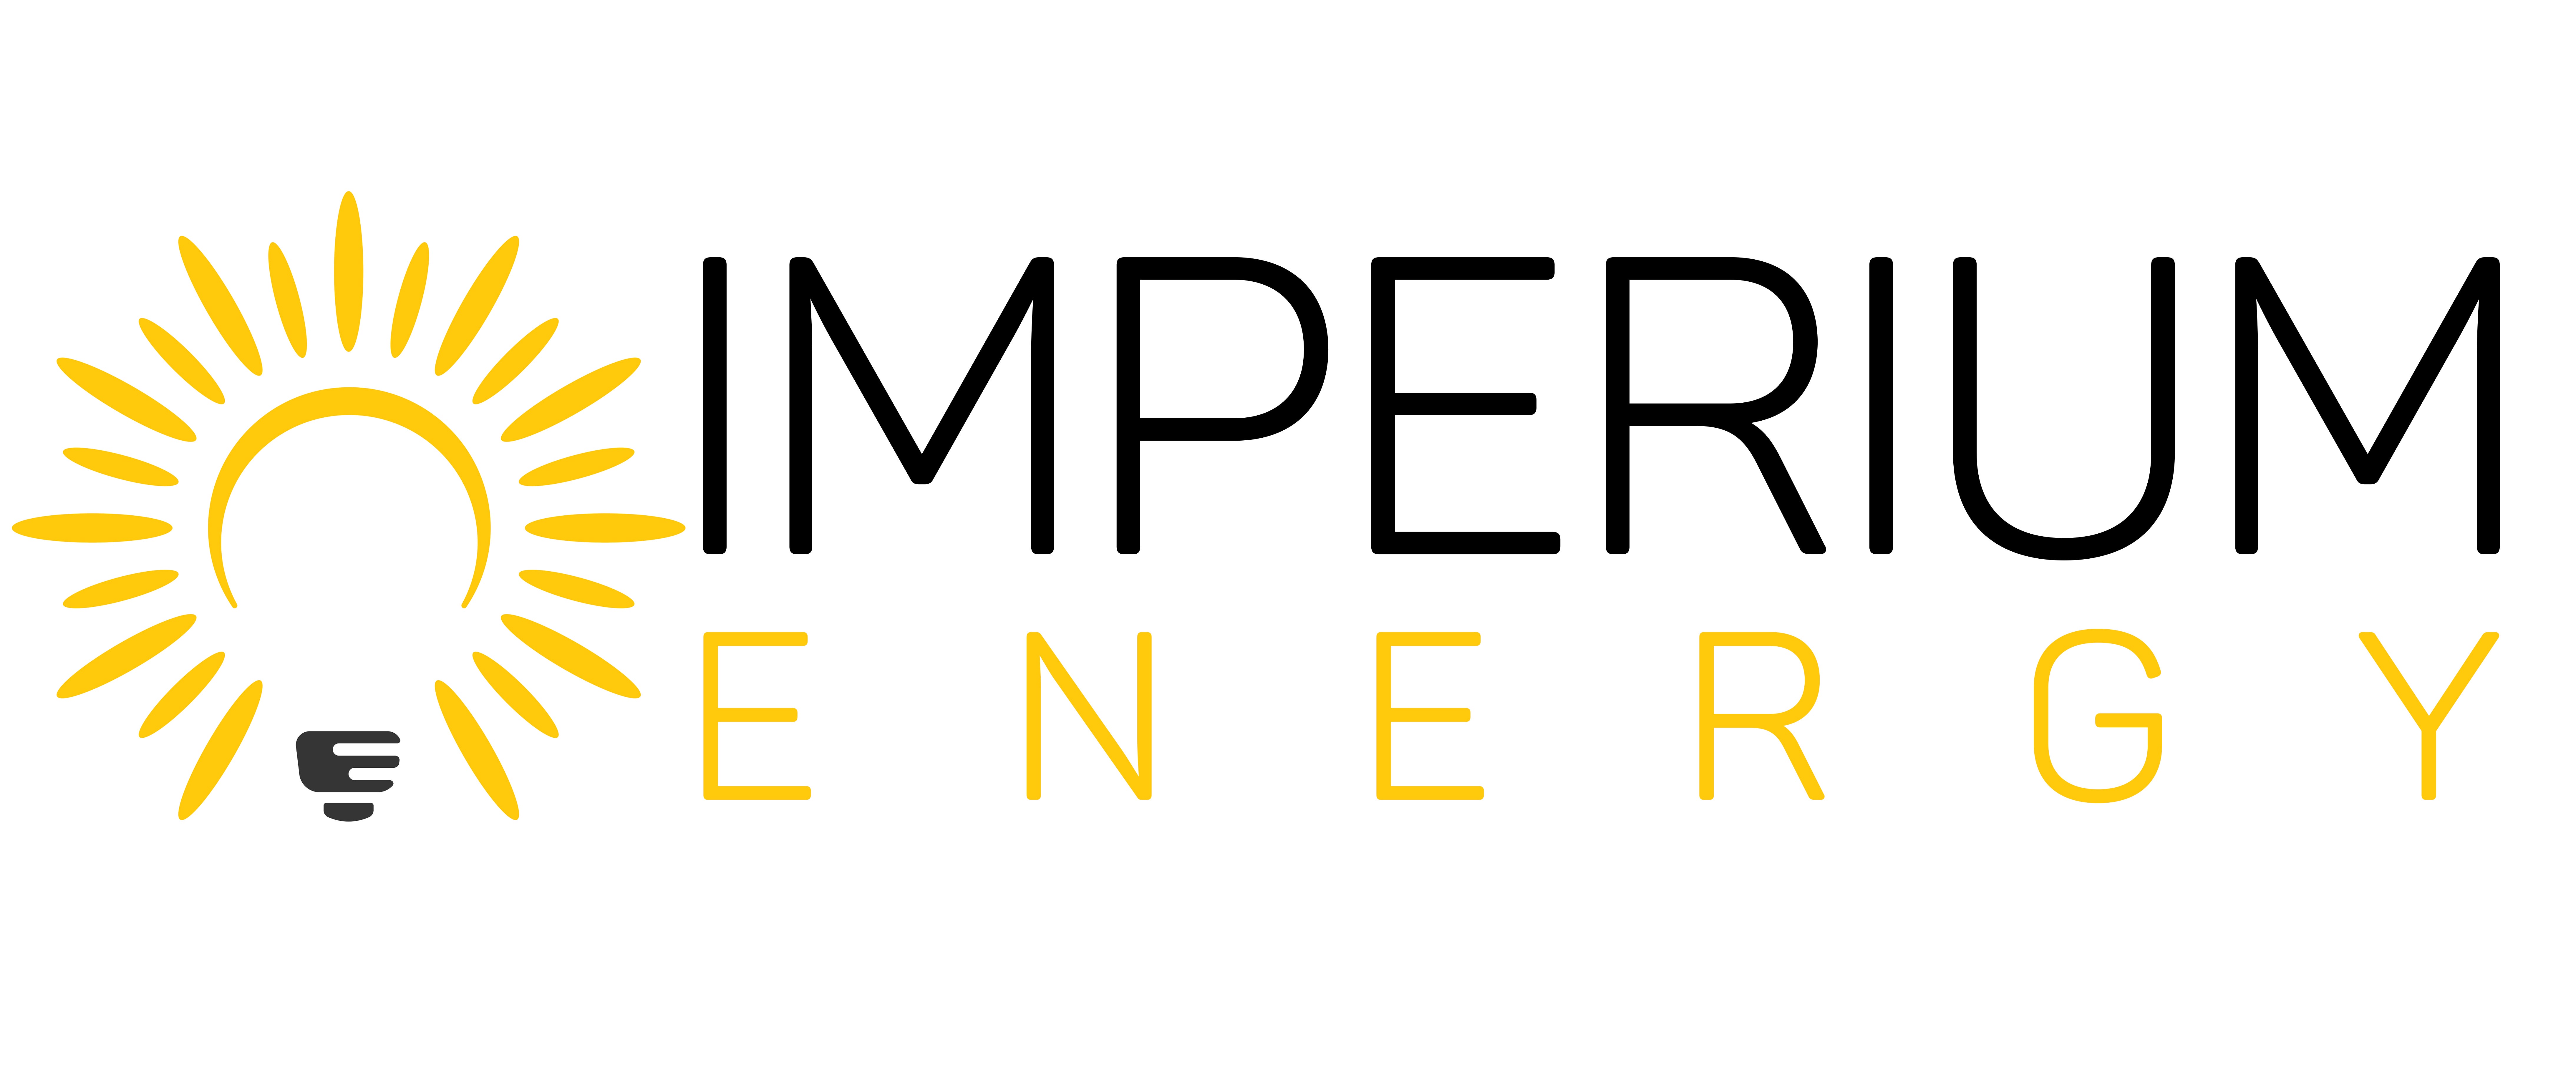 Imperium Energy logo